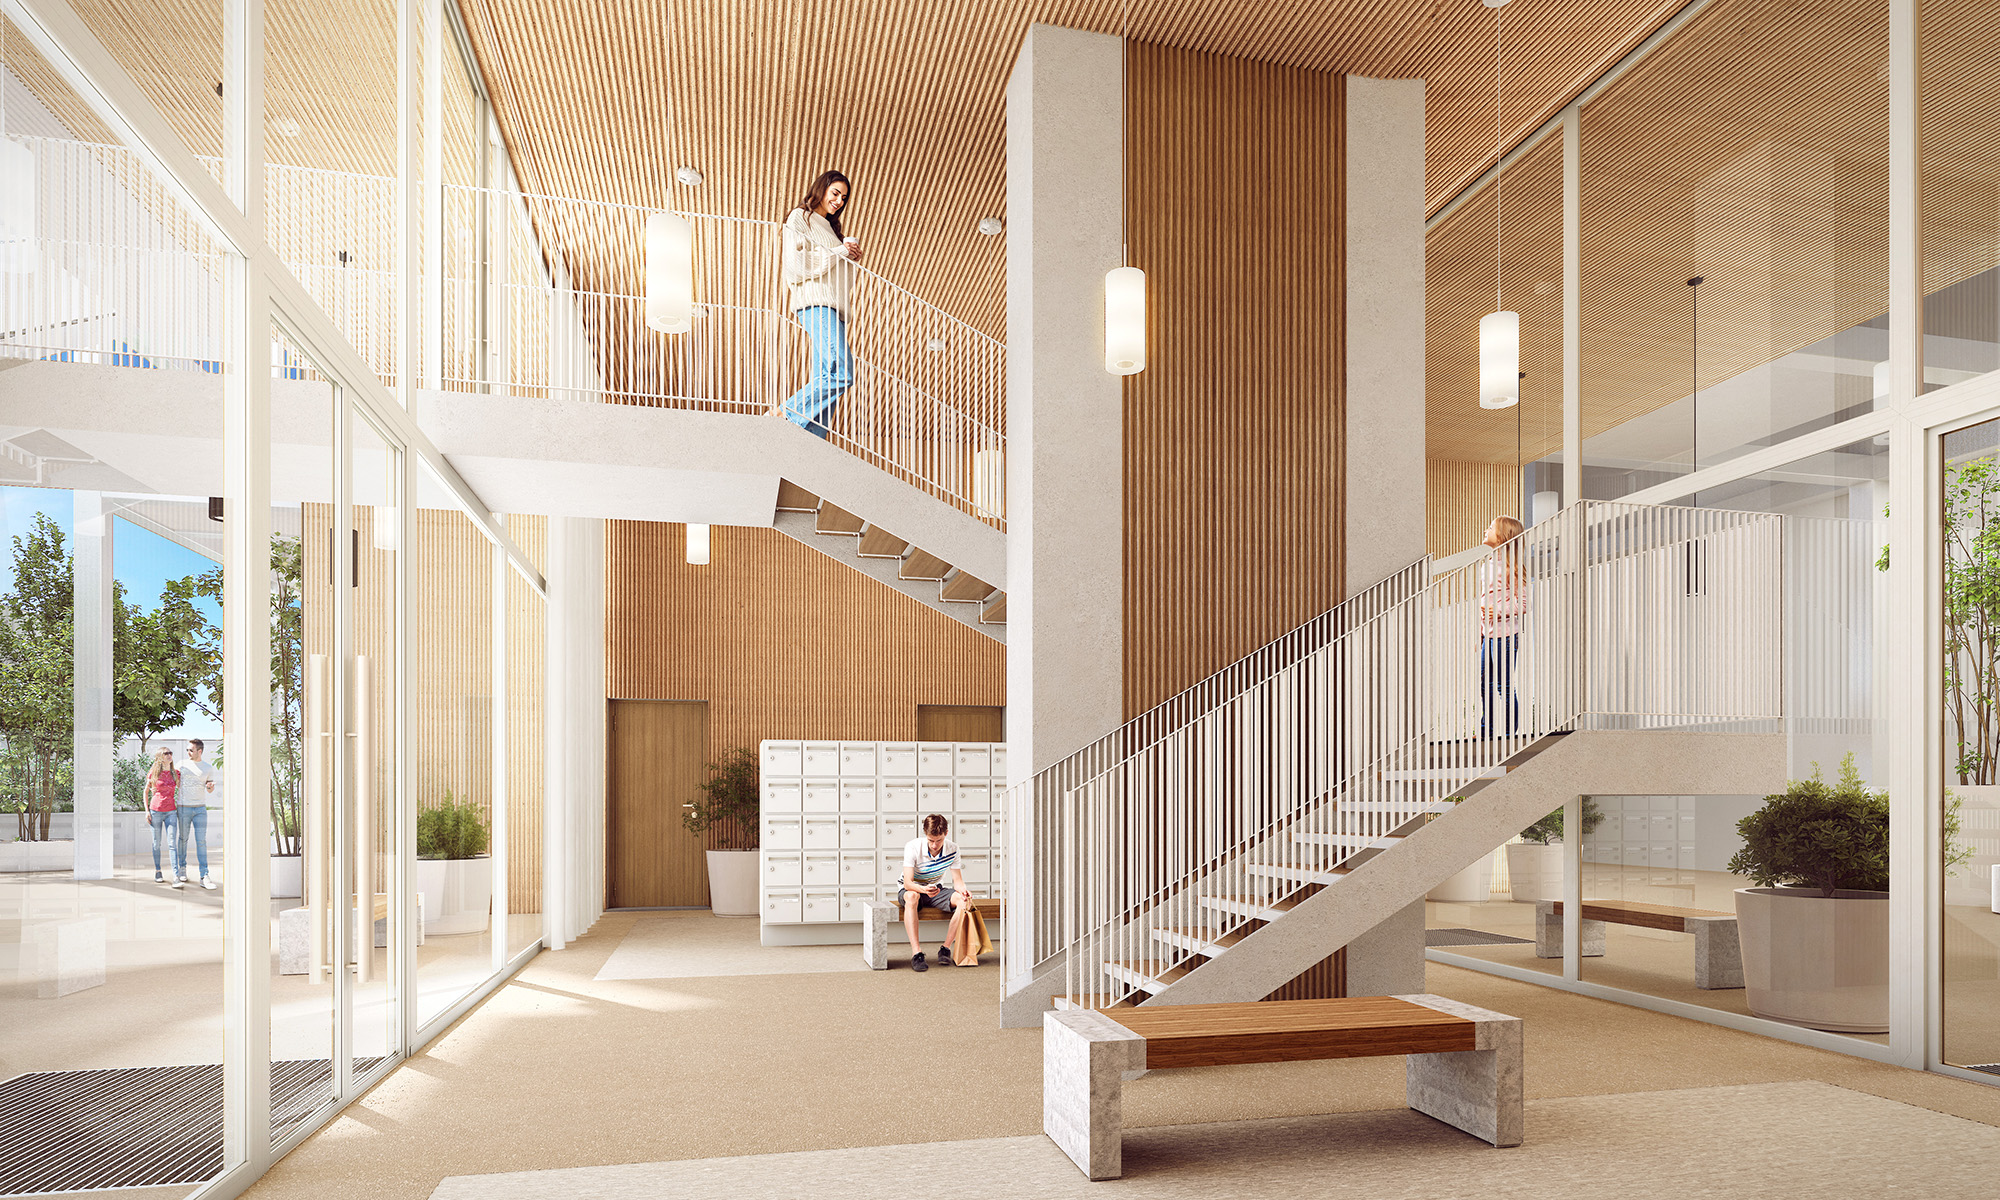 La Serre 白色钢架外立面也设计有阶梯直接通往一楼大厅。